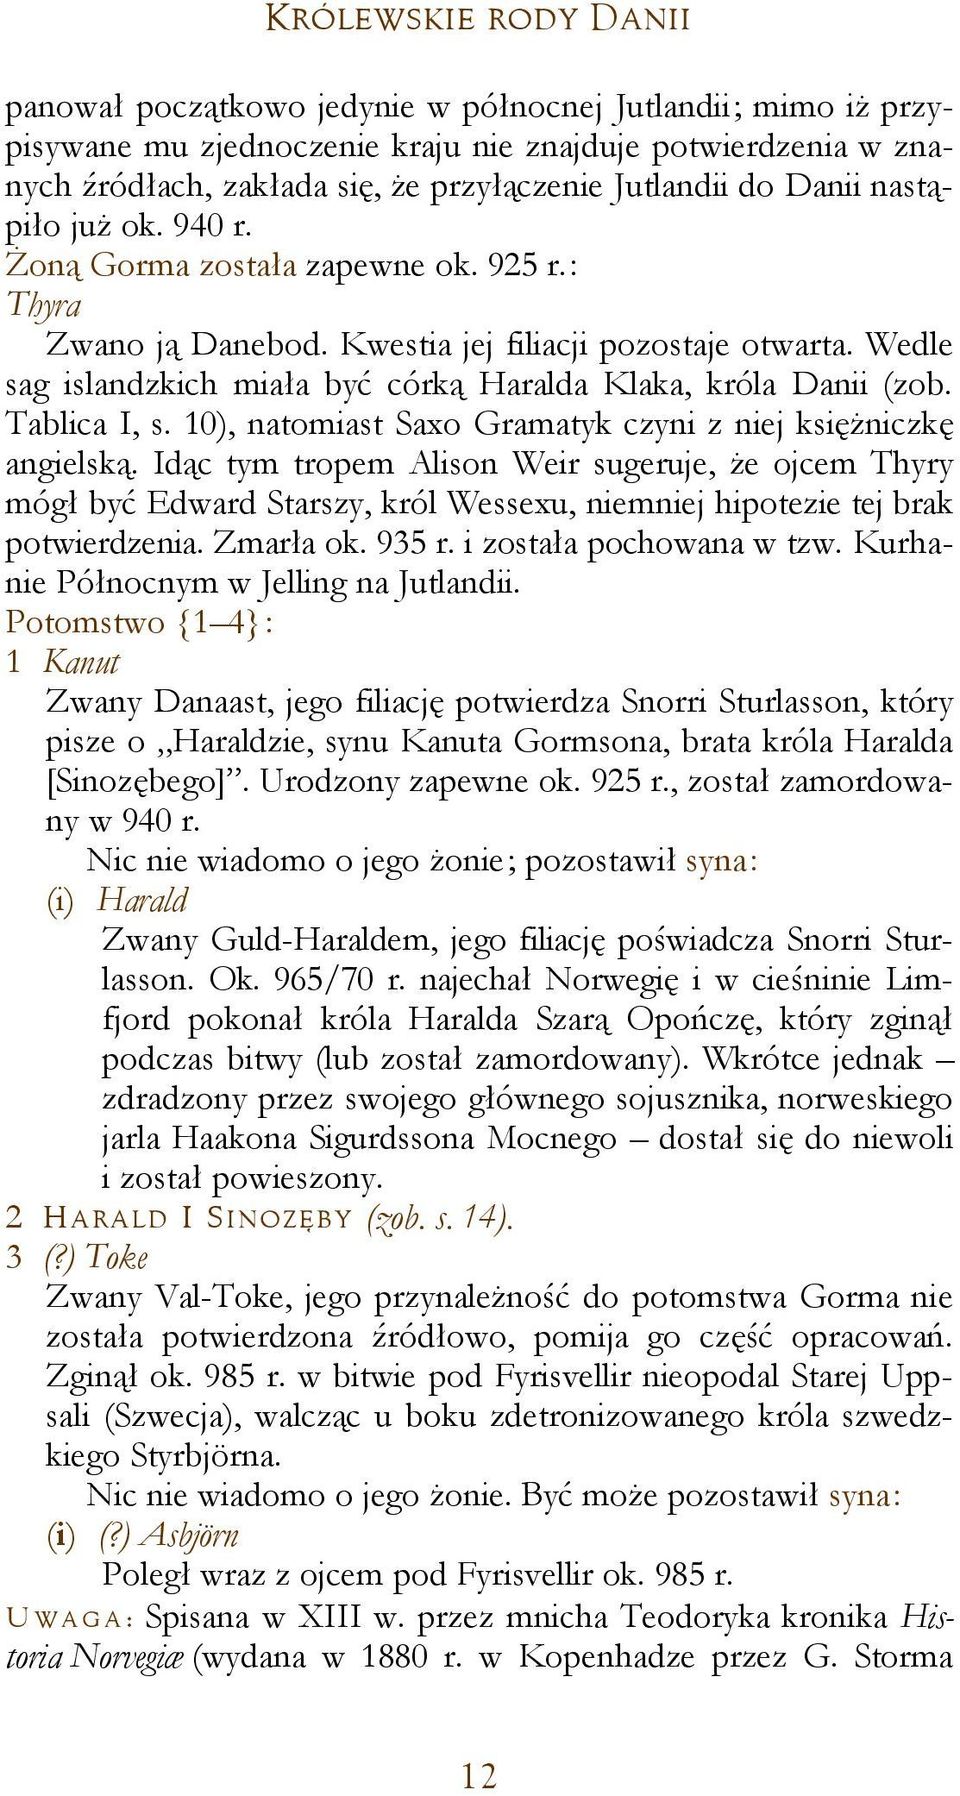 Wedle sag islandzkich miała być córką Haralda Klaka, króla Danii (zob. Tablica I, s. 10), natomiast Saxo Gramatyk czyni z niej księżniczkę angielską.